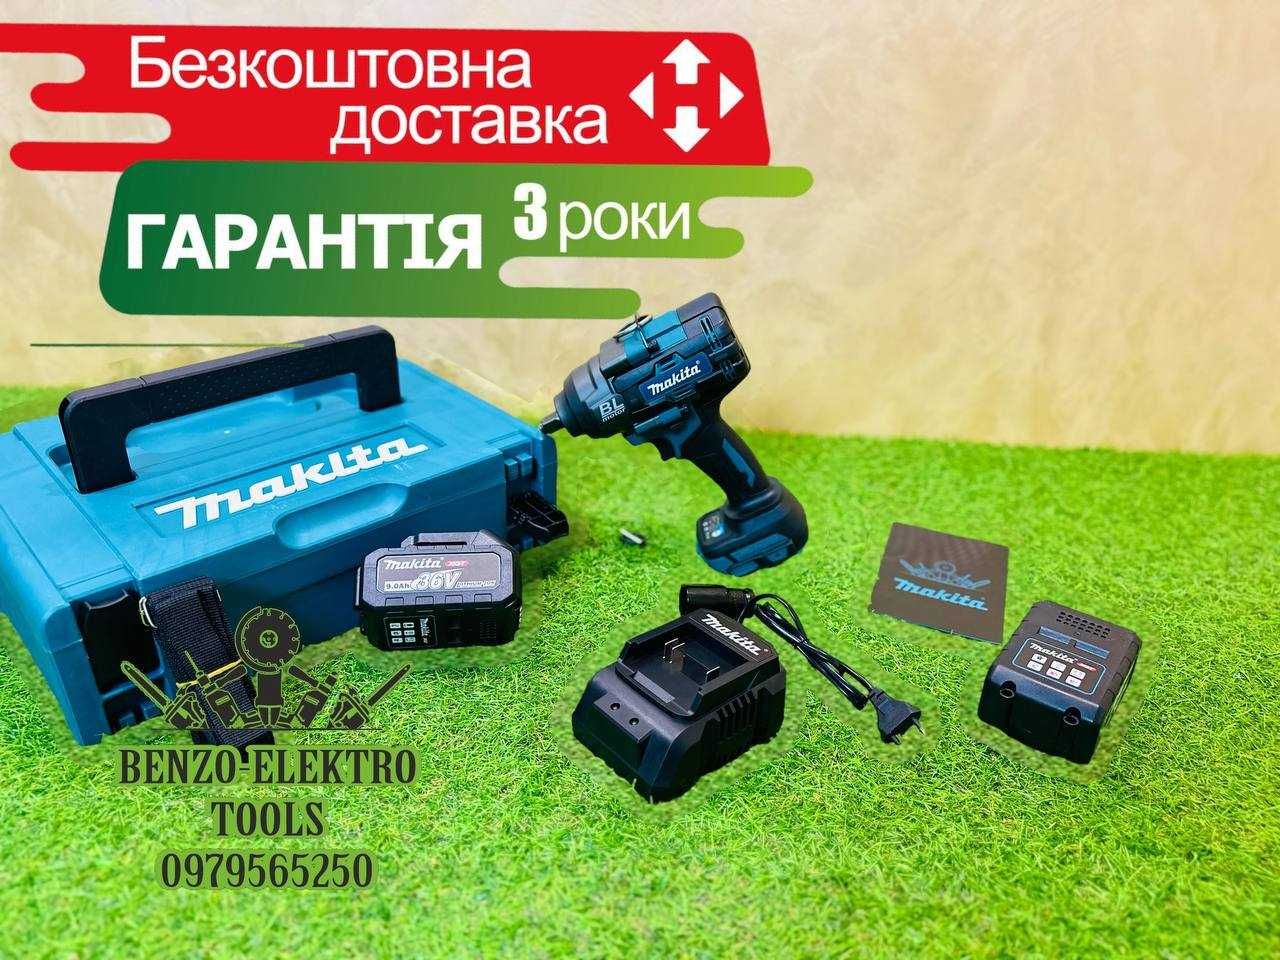 Аккумуляторный гайковерт для шиномонтажа Makita DTW 1002 36V-9Aч (XGT)